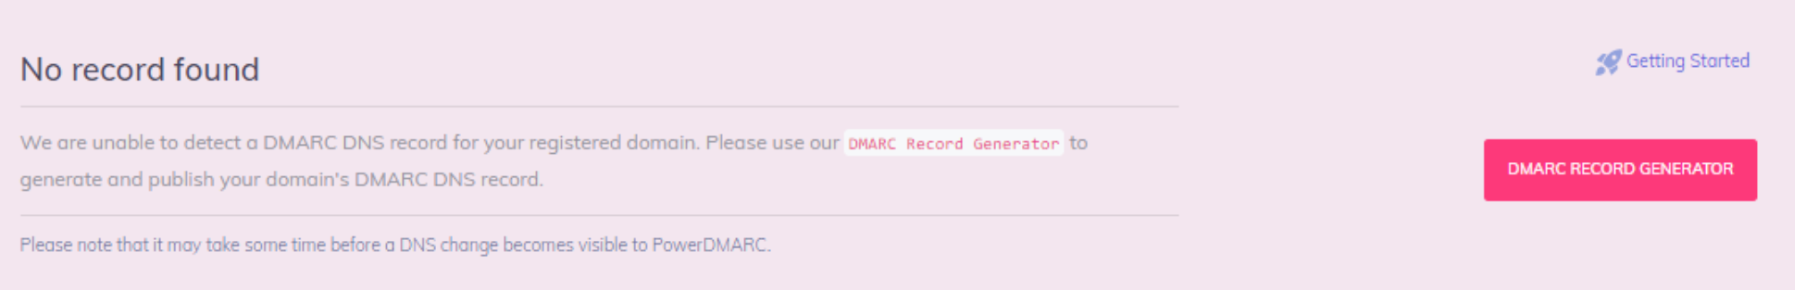 no se ha encontrado ningún registro DMARC